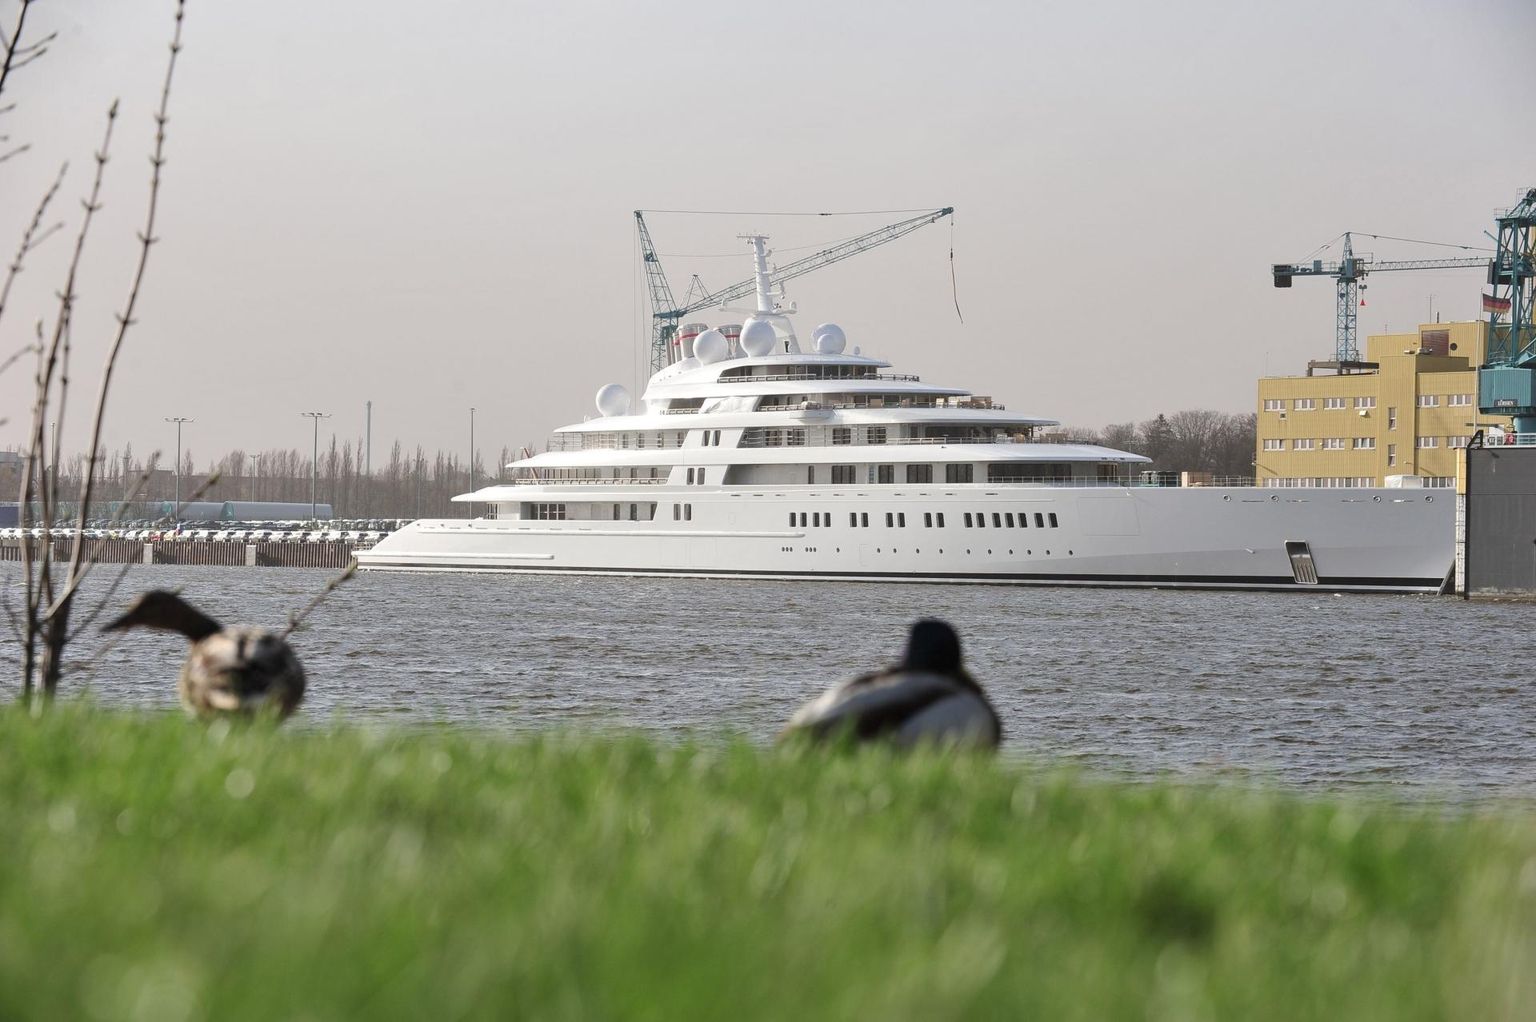 Maailma suurim luksusjaht, väidetavalt Araabia Ühendemiraatide presidendile šeik Khalifa bin Zayed Al Nahyanile kuuluv Azzam seilamas Weseri jõel Saksamaal.